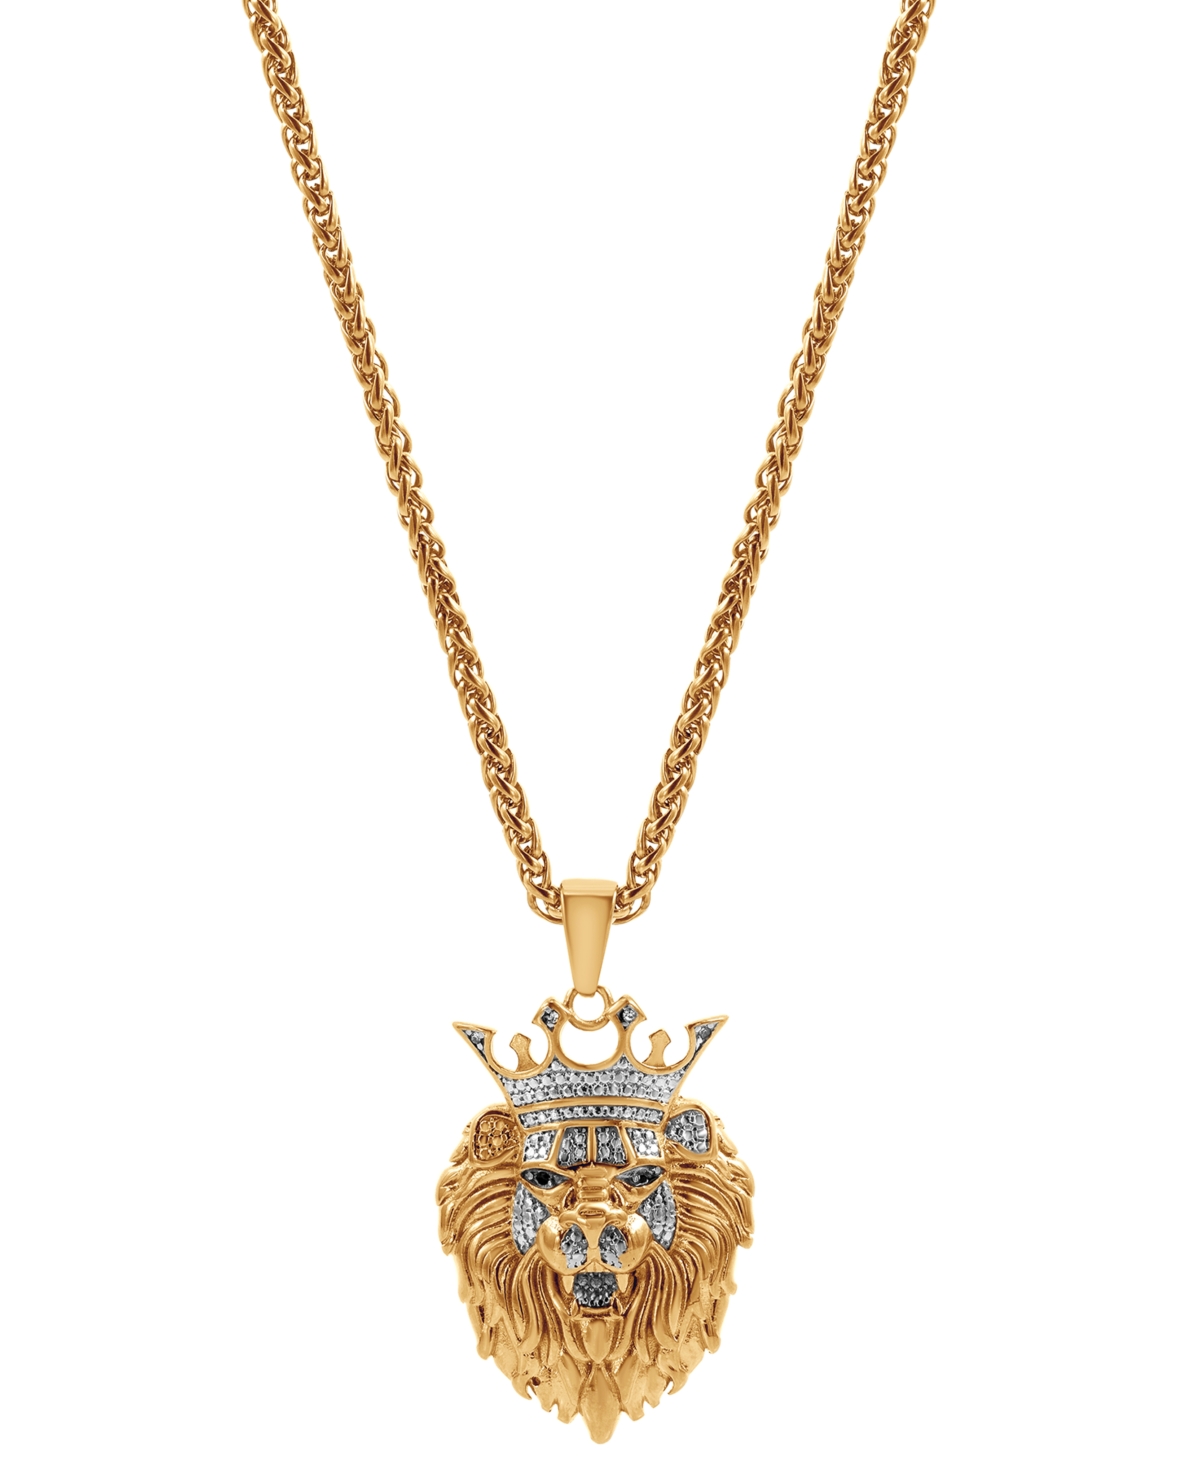 Men's Cubic Zirconia Lion King Head 24" Pendant Necklace - Gold-Tone